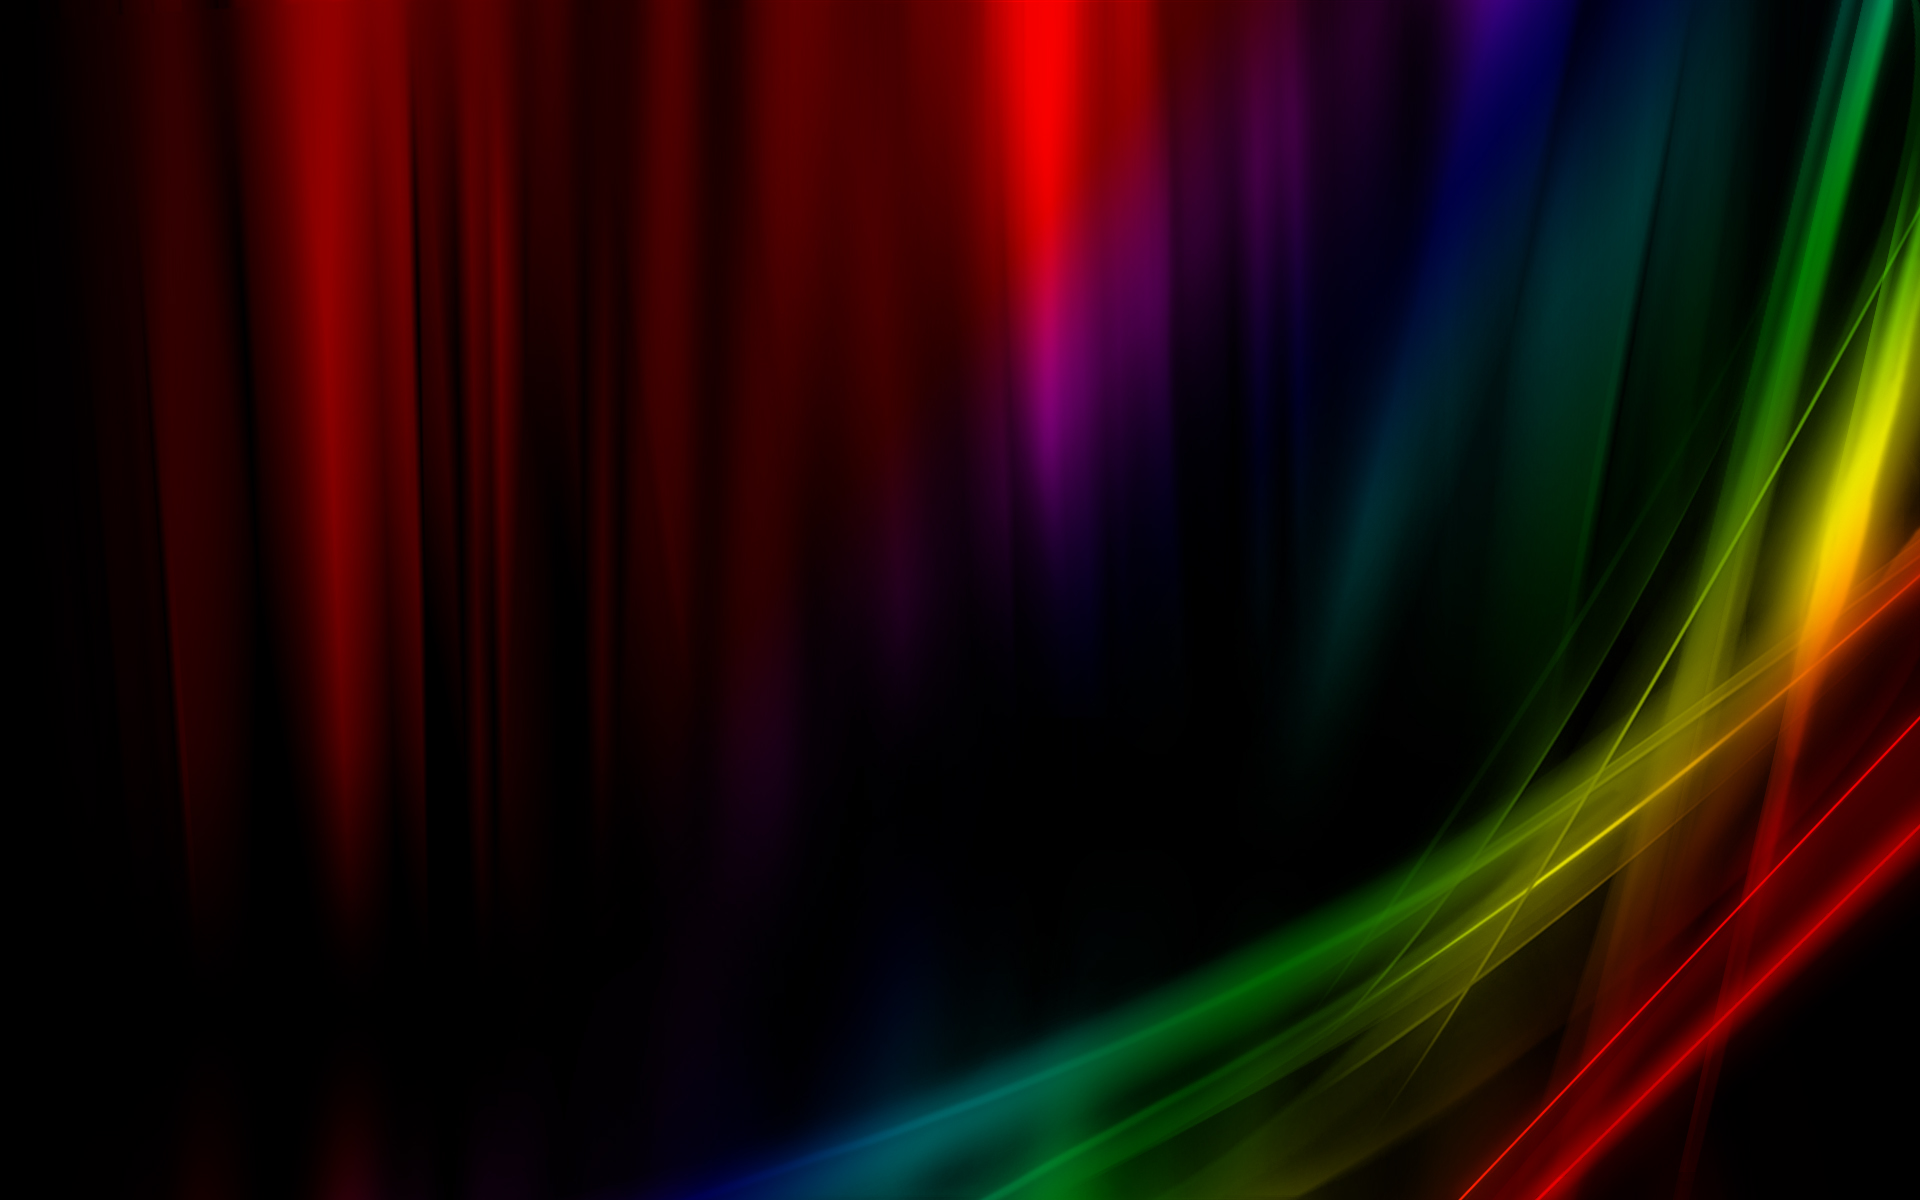 壁纸1920x1200抽象背景 彩虹之色 彩虹之色 电脑光炫效果设计壁纸 抽象背景 彩虹之色壁纸 抽象背景 彩虹之色图片 抽象背景 彩虹之色素材 插画壁纸 插画图库 插画图片素材桌面壁纸